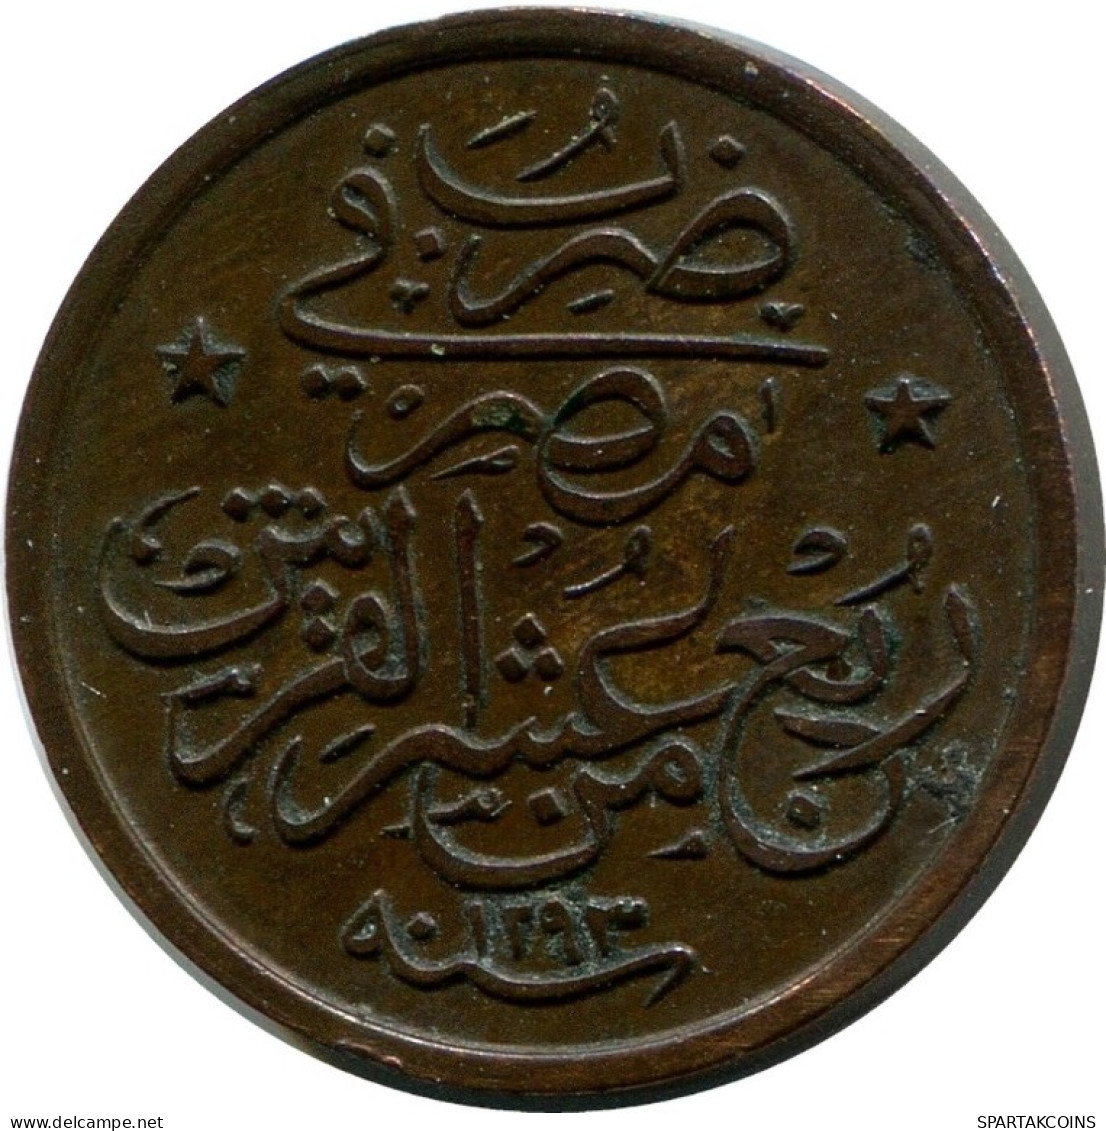 1/40 QIRSH 1903 EGYPTE EGYPT Islamique Pièce #AH241.10.F.A - Aegypten